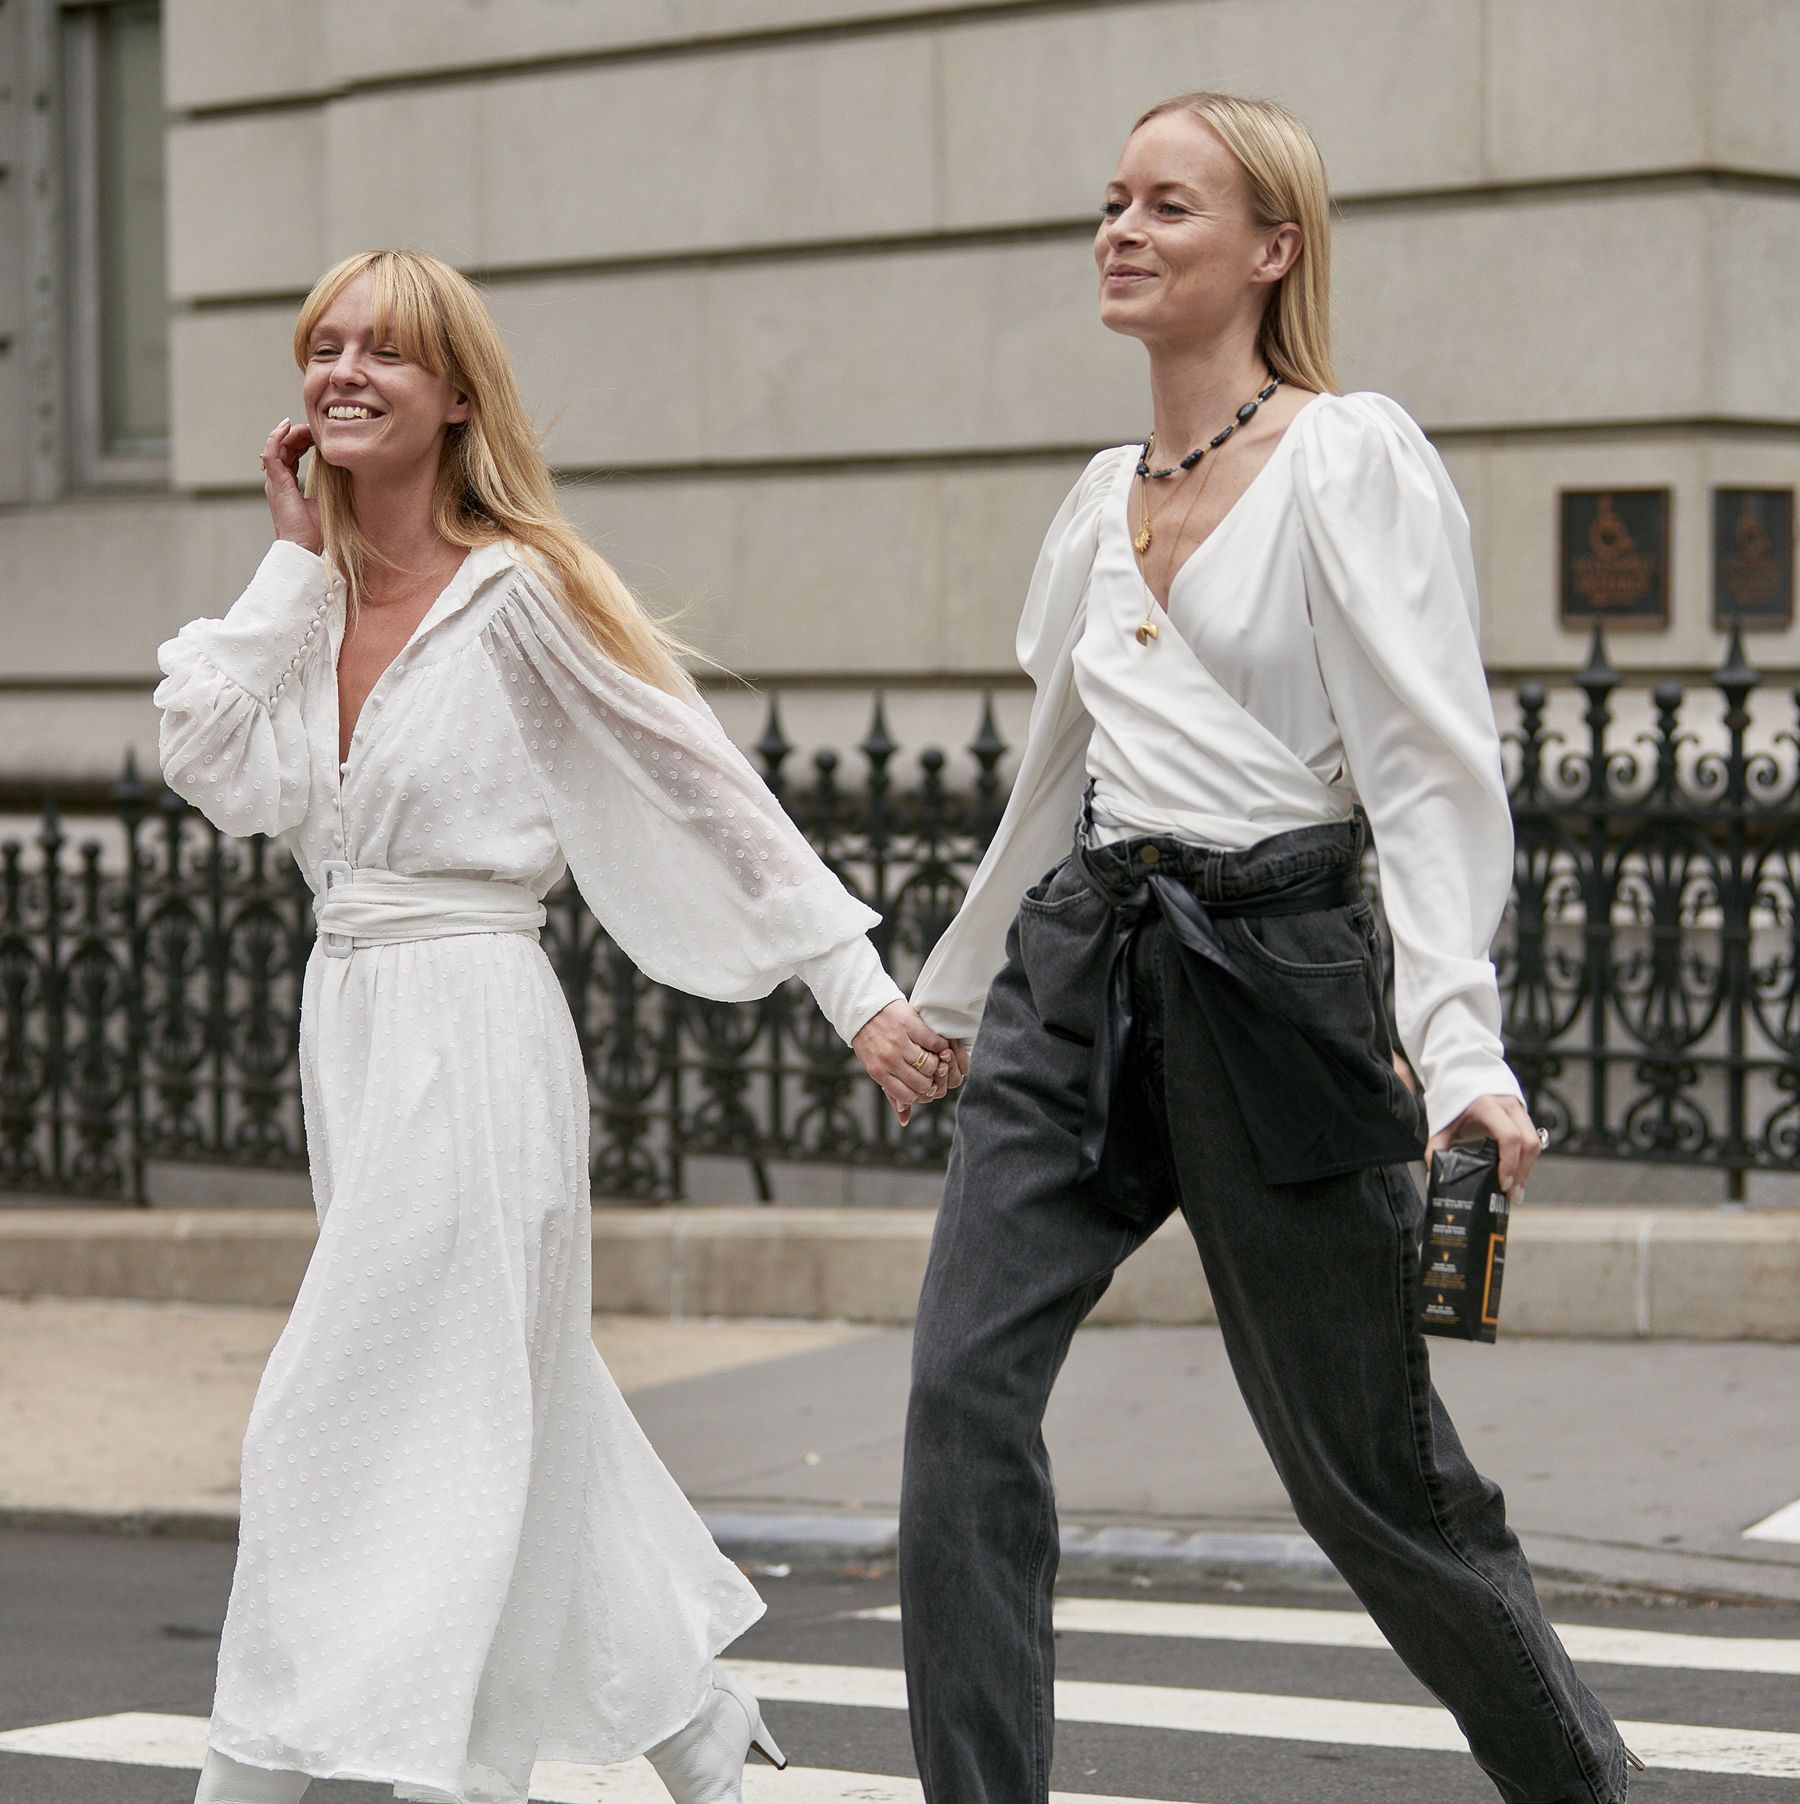 La ropa de Zara de nueva temporada en Nueva York-Looks de Zara